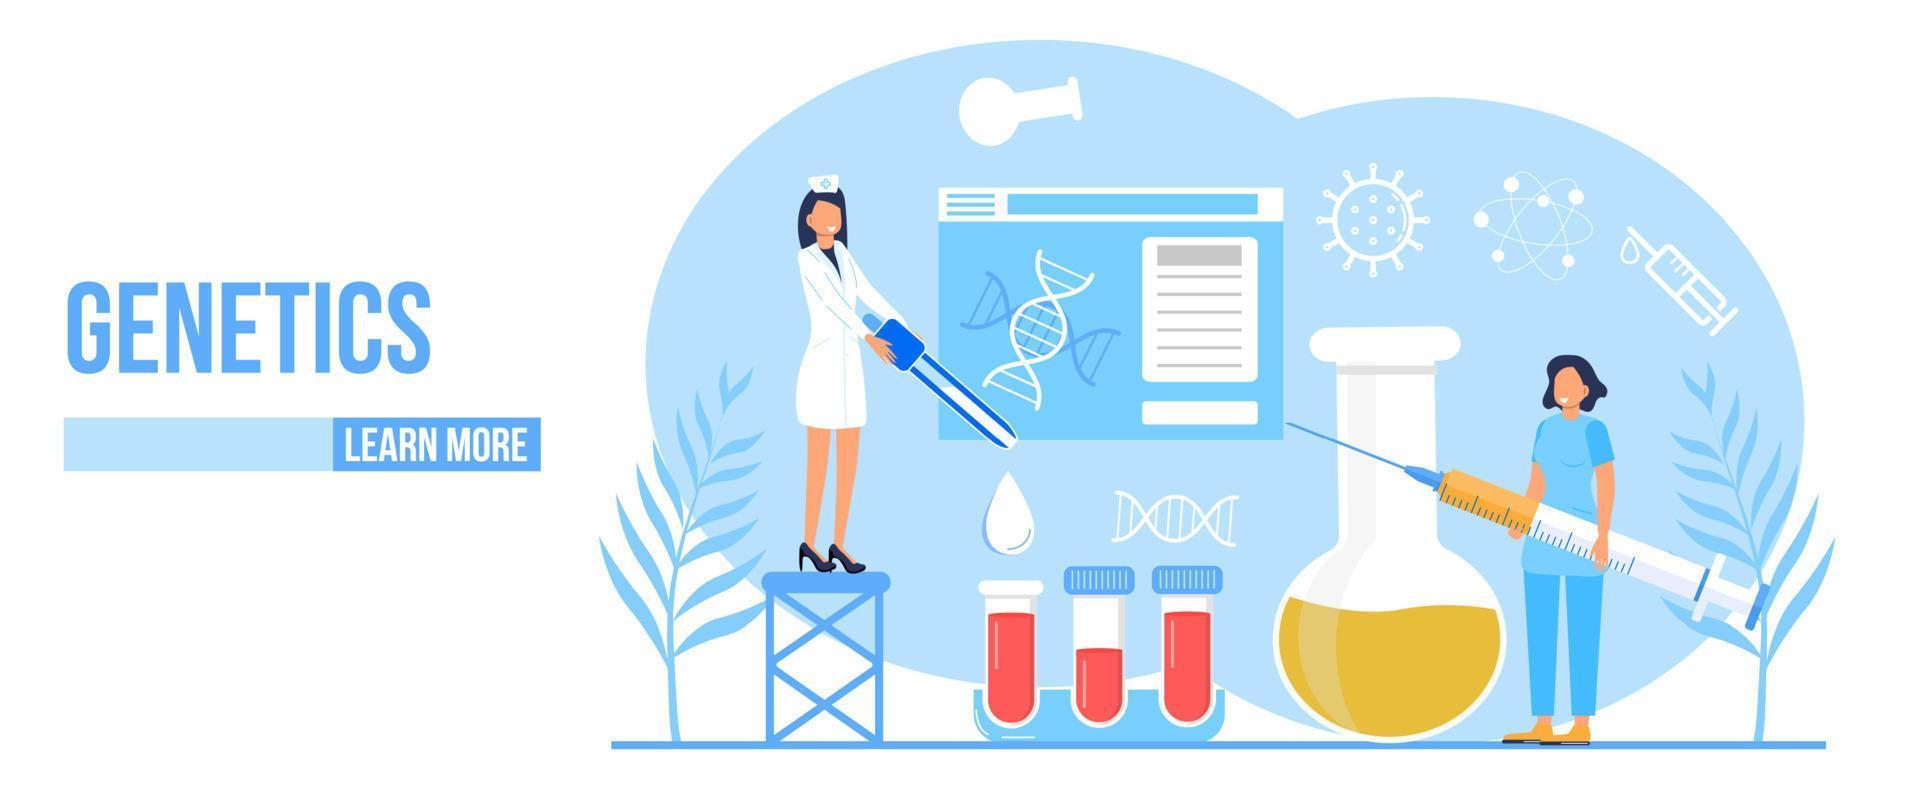 vetor de conceito de genética. inovação, pesquisa científica e estudo online. química, pesquisador de medicina estão trabalhando. cientistas estudam dna, genoma.